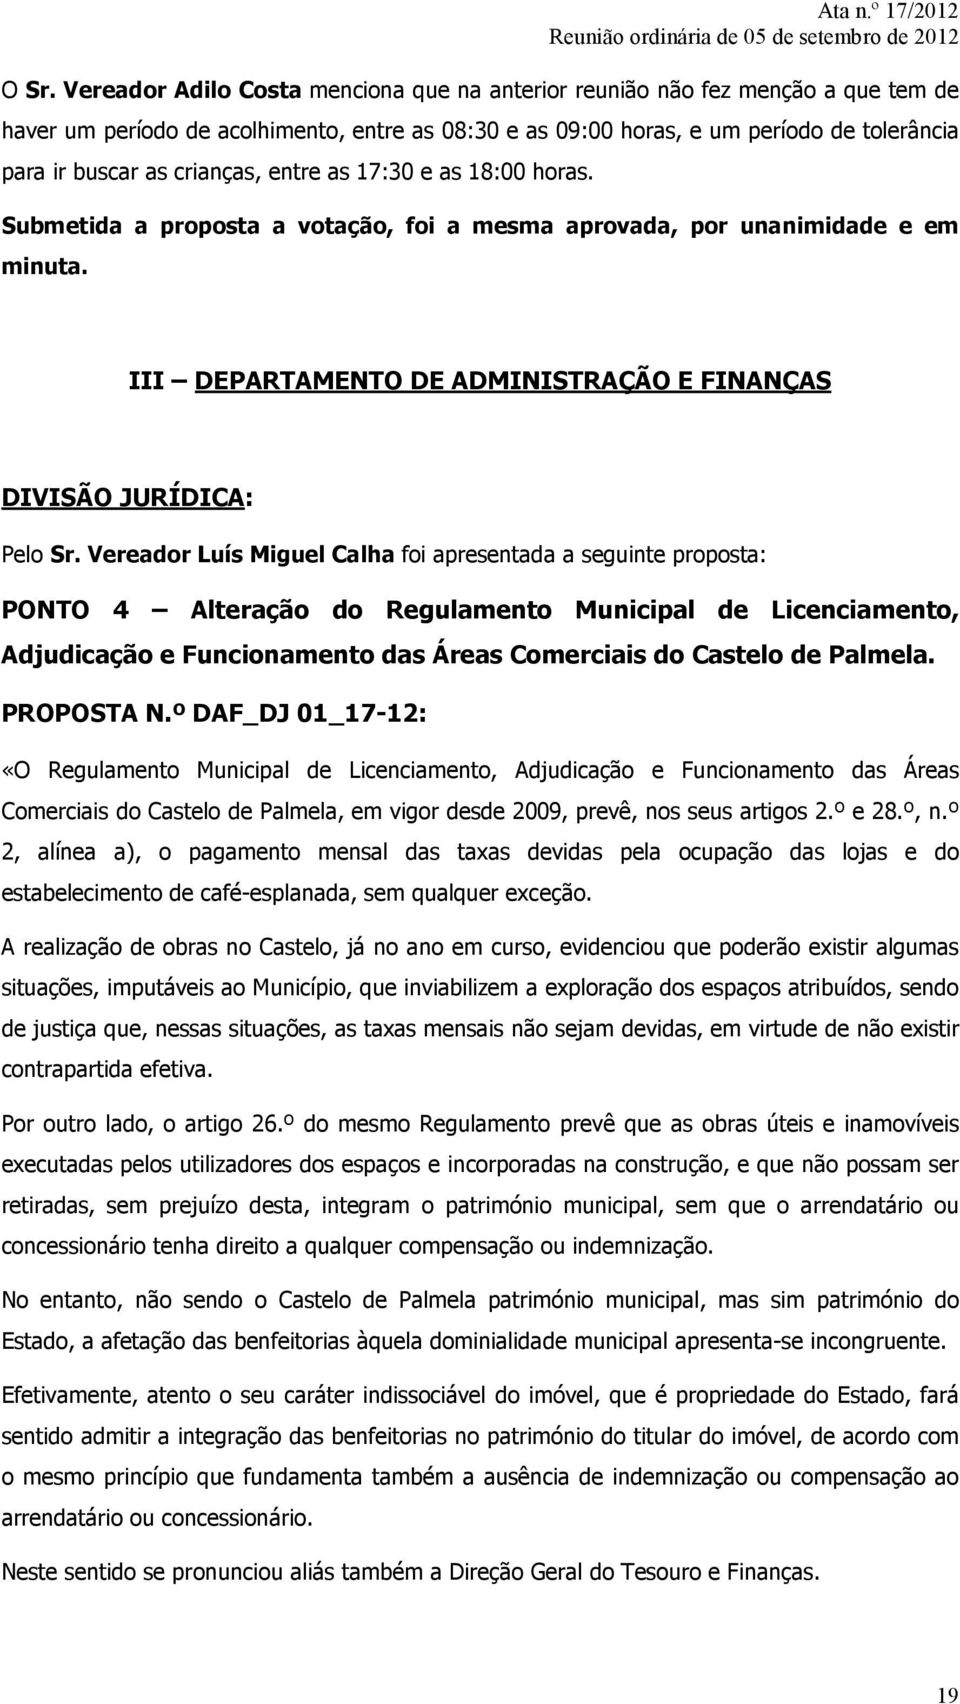 Vereador Luís Miguel Calha foi apresentada a seguinte proposta: PONTO 4 Alteração do Regulamento Municipal de Licenciamento, Adjudicação e Funcionamento das Áreas Comerciais do Castelo de Palmela.